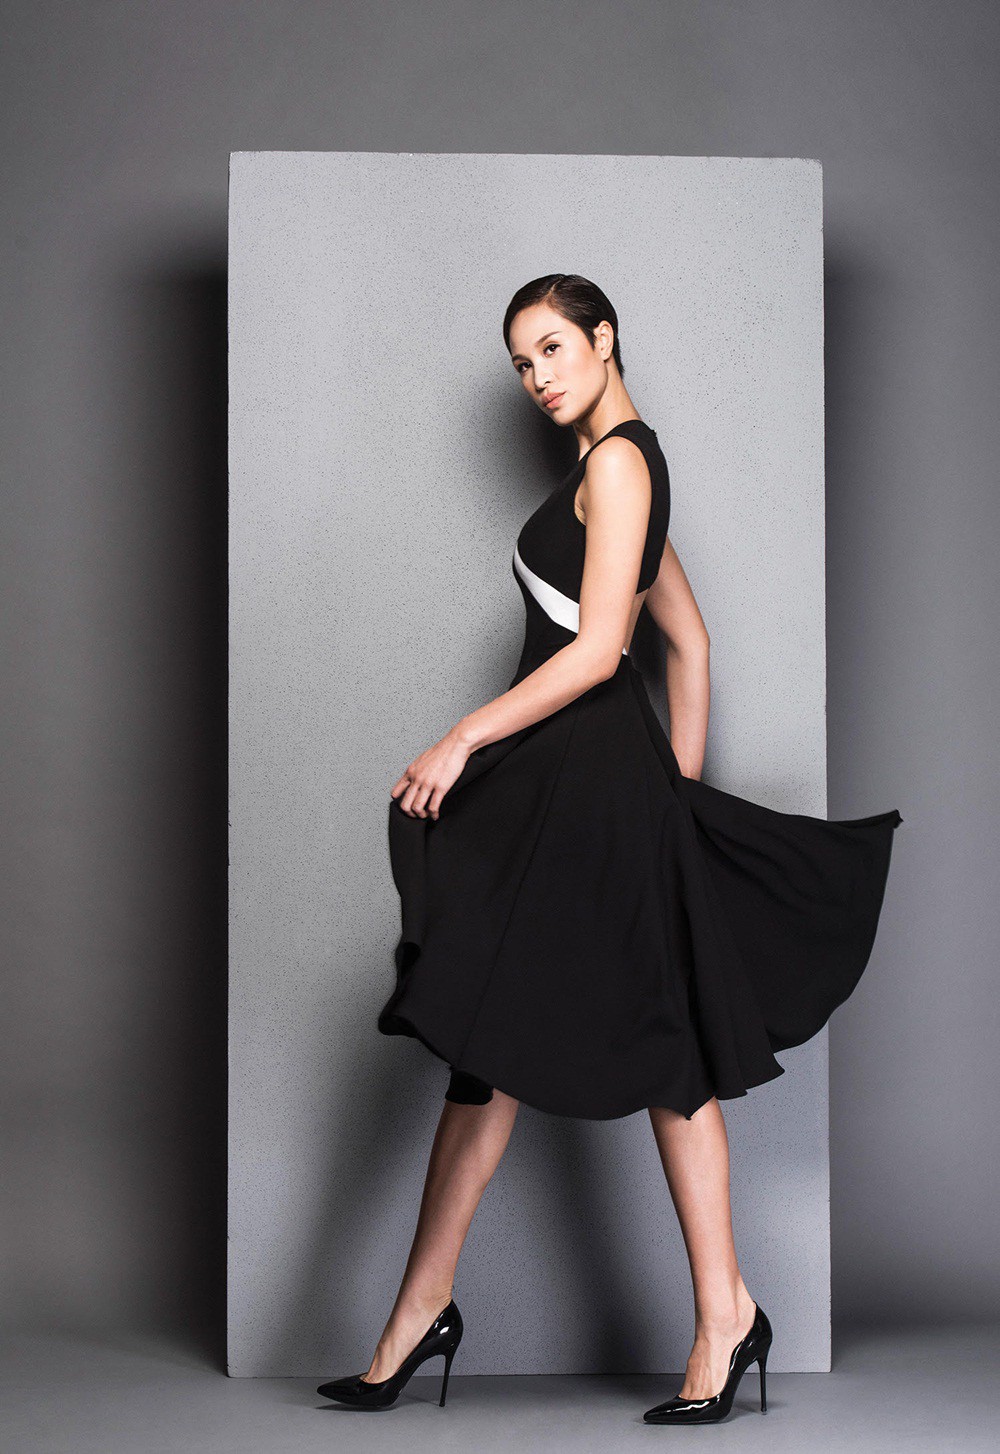 Hà Tăng cũng từng diện bộ váy đen y chang thiết kế mà Lan Khuê mặc đi mặc lại  - Ảnh 8.